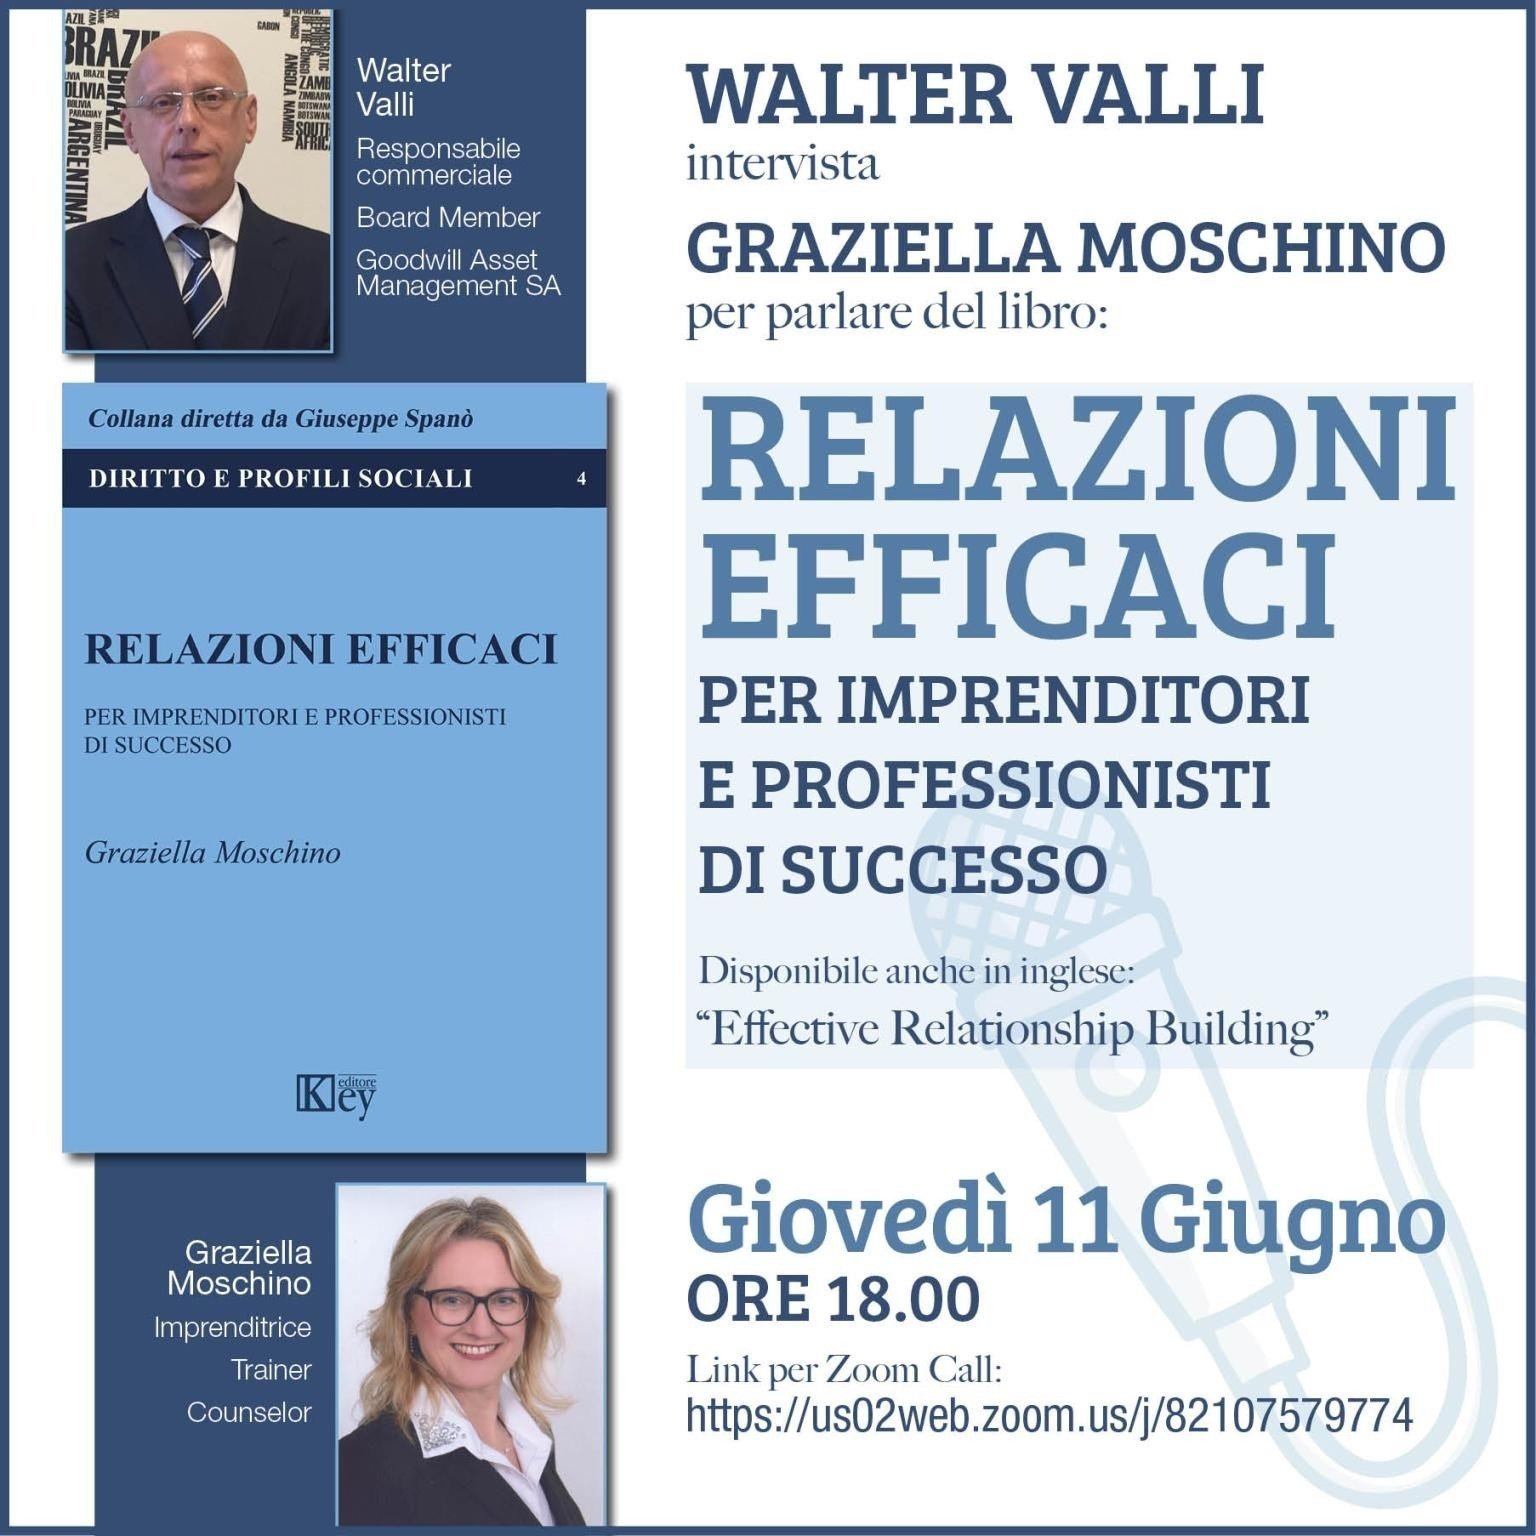 Walter Valli intervista Graziella Moschino per GWAM